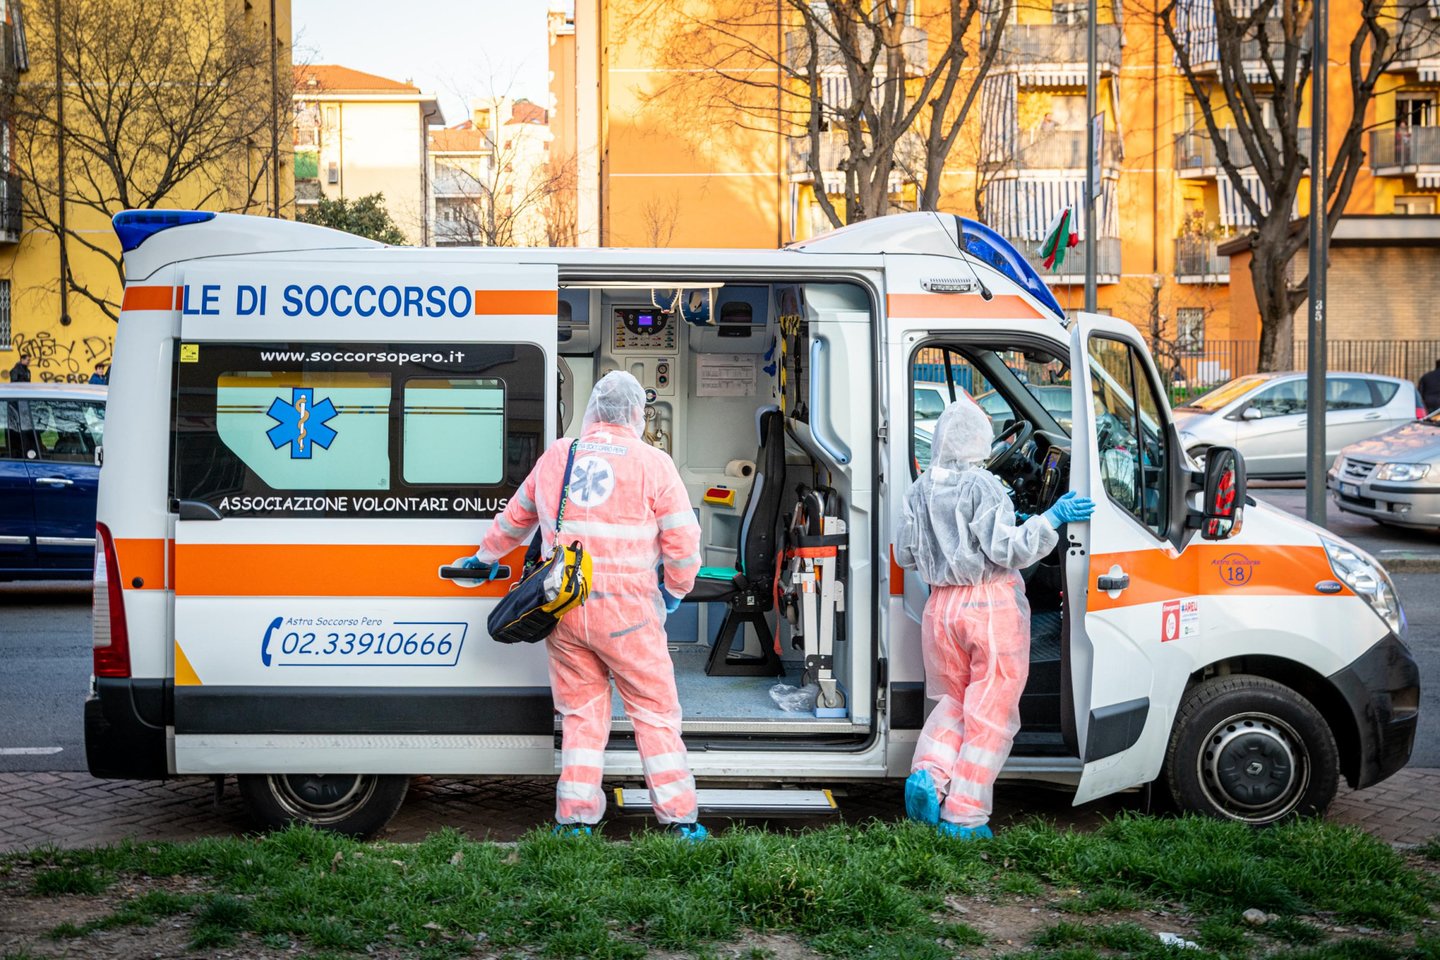 Italijoje buvo dar labiau sugriežtintos karantino sąlygos, tačiau šių priemonių rezultatų vyriausybei dar reikės palaukti. Kol kas dauguma koronaviruso aukų miršta net nespėjusios pakliūti į ligonines.<br> Scanpix nuotr.